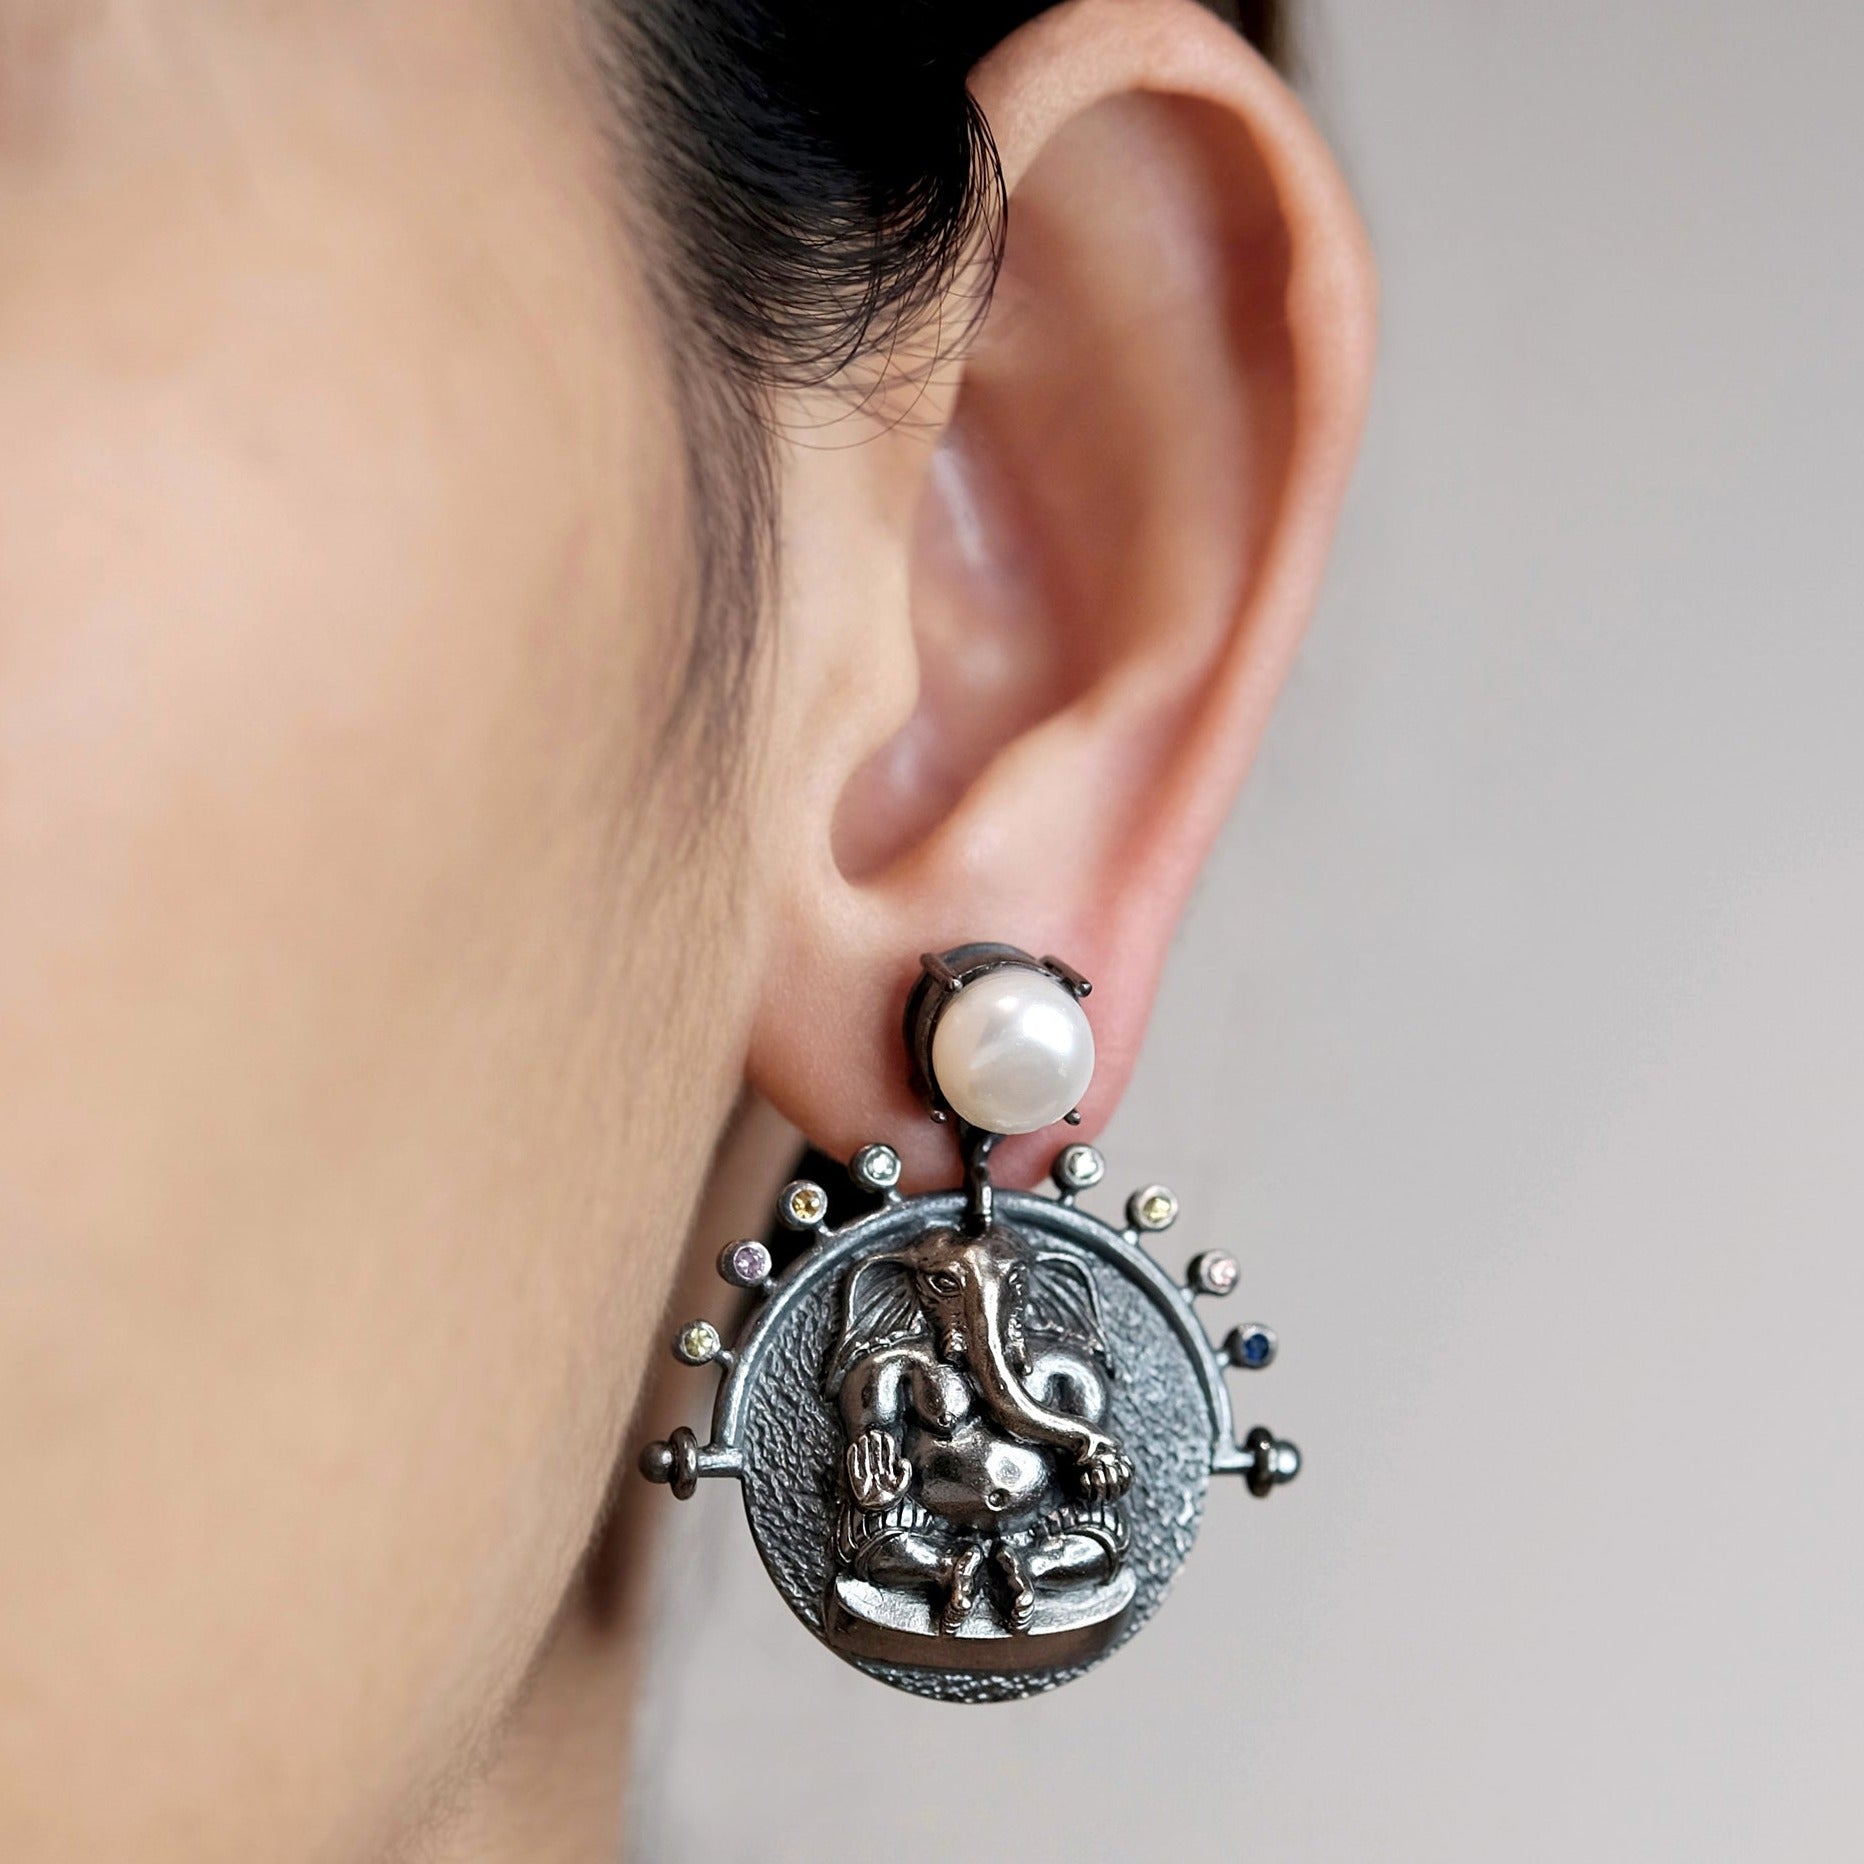 The Madstone Ganesha earrings